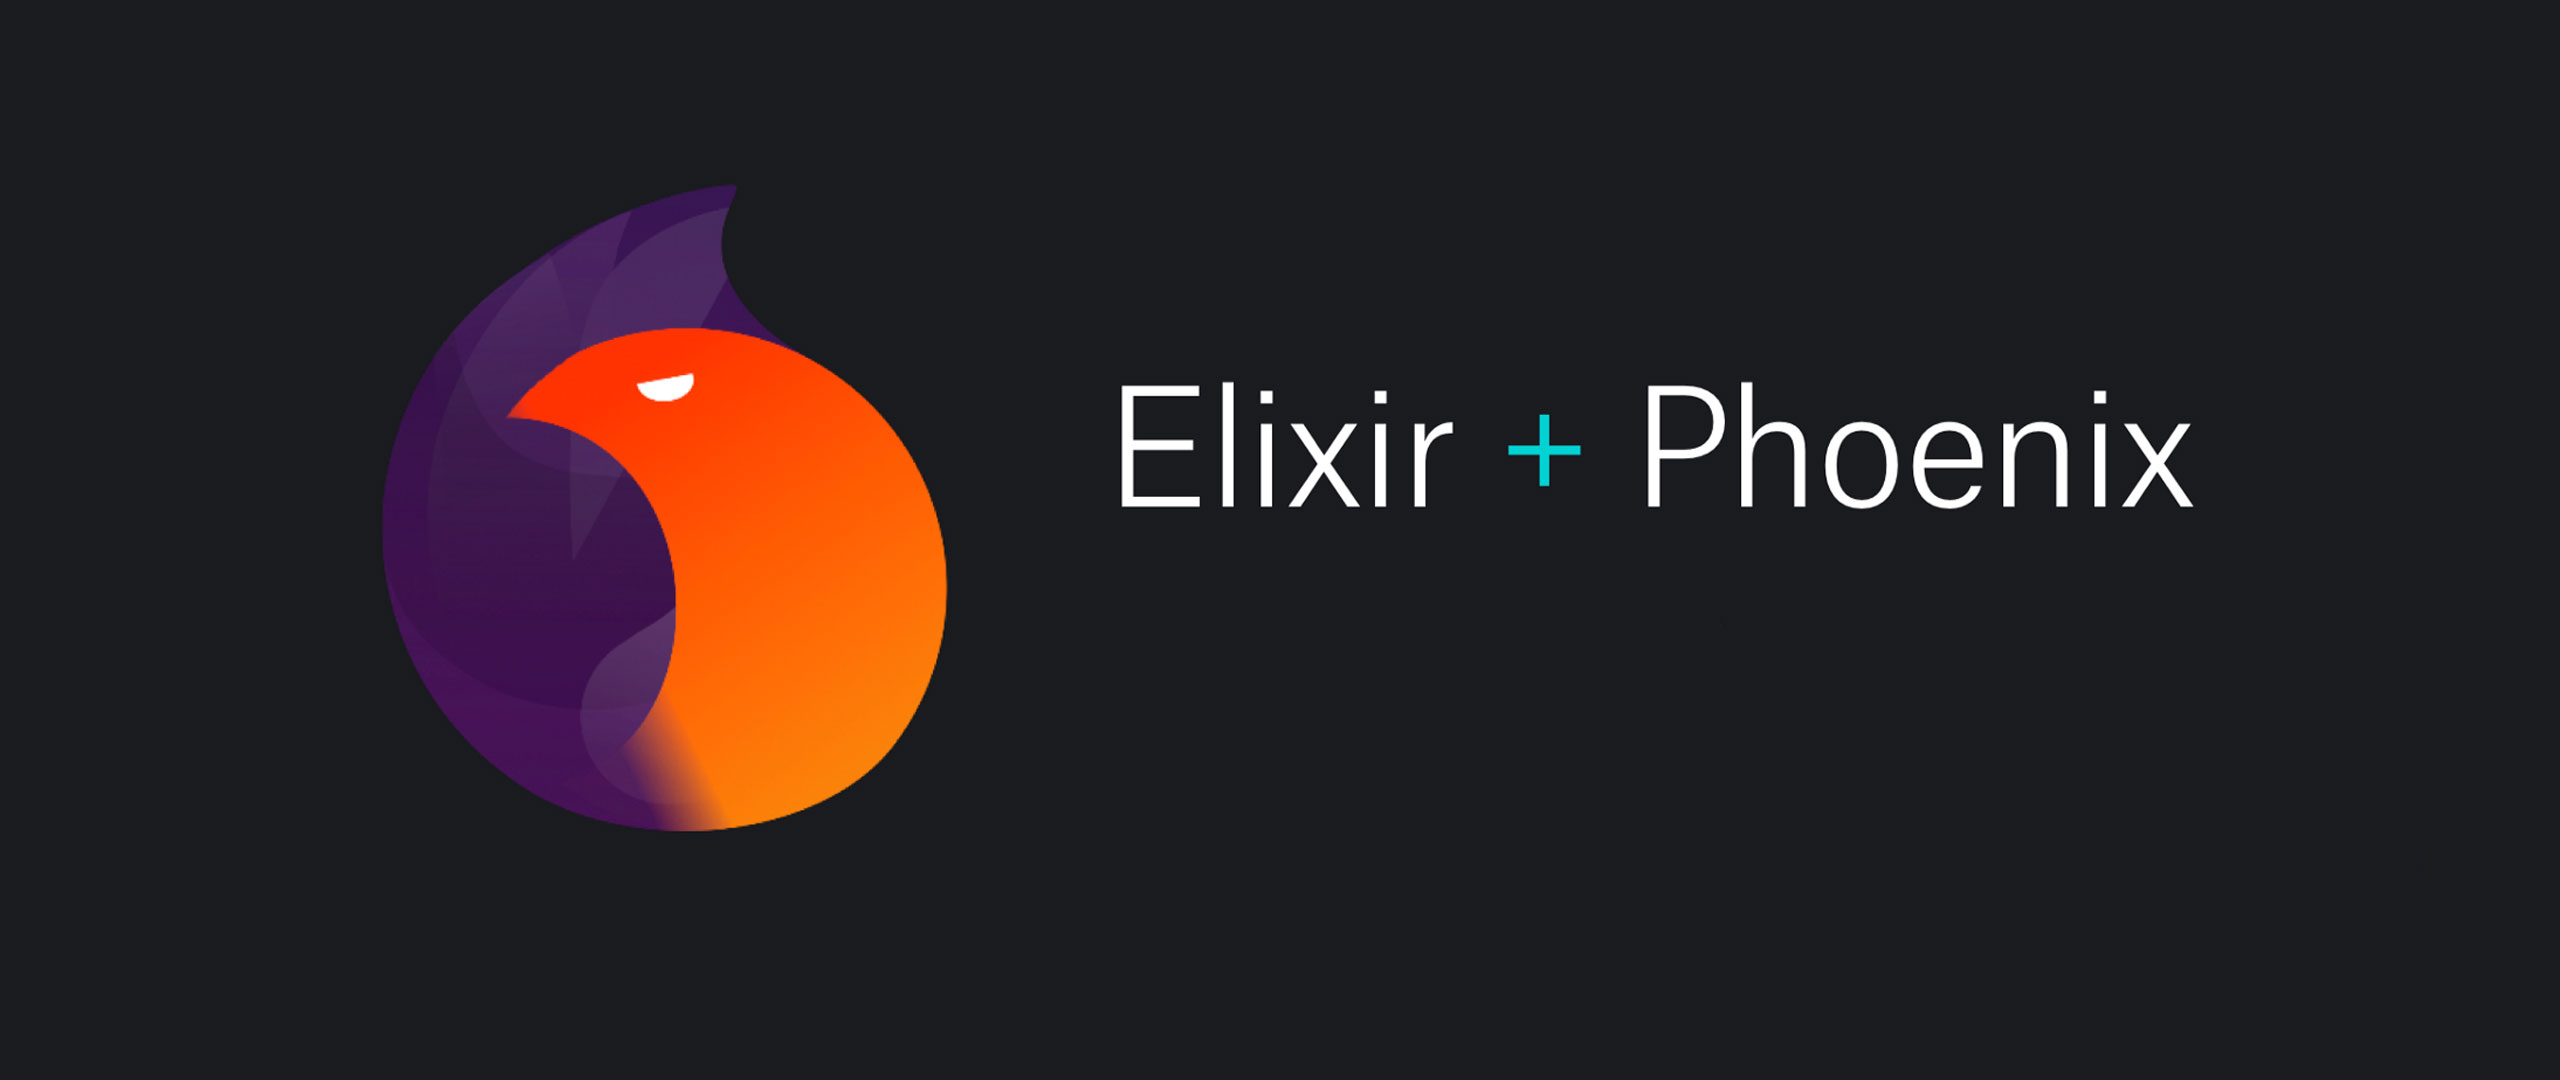 Het logo van Elixir en Phoenix die samenvoegen met de tekst 'Elixir + Phoenix'